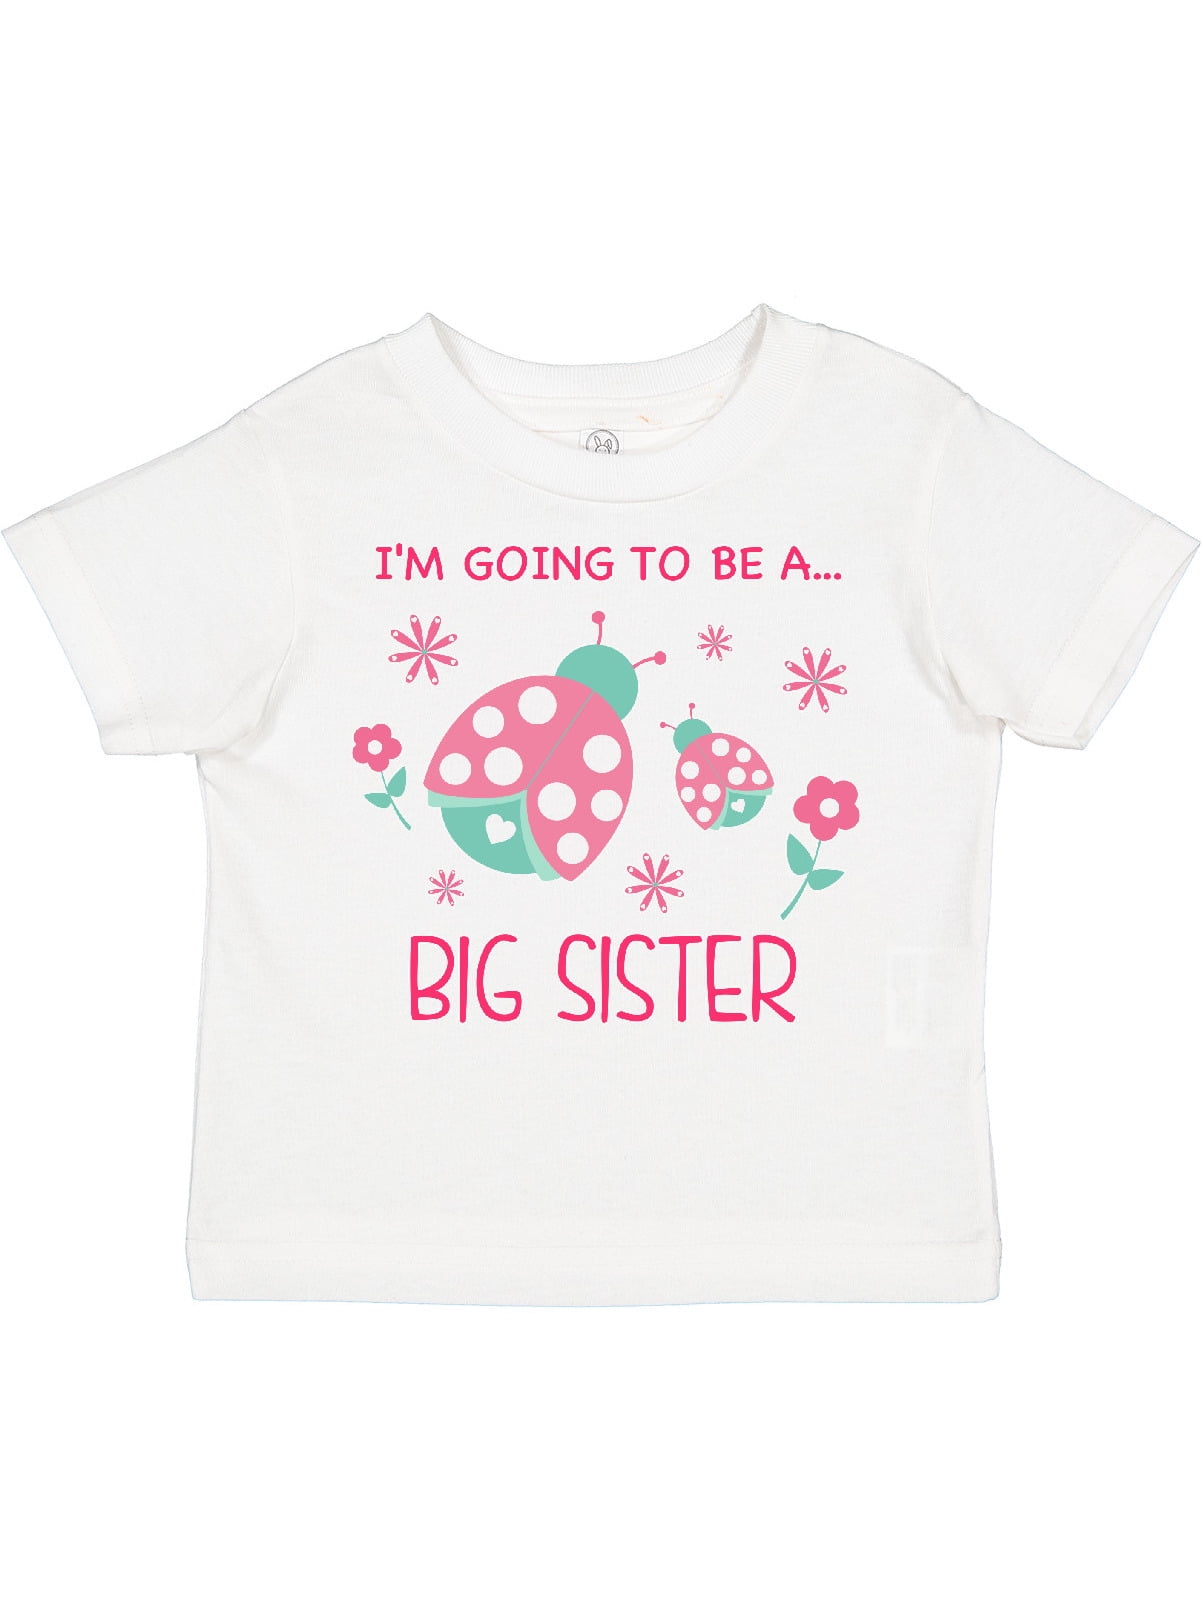 Ladies I Can't Keep Calm I'm Going To Be A Big Sister Love Family DT T-Shirt Tee 